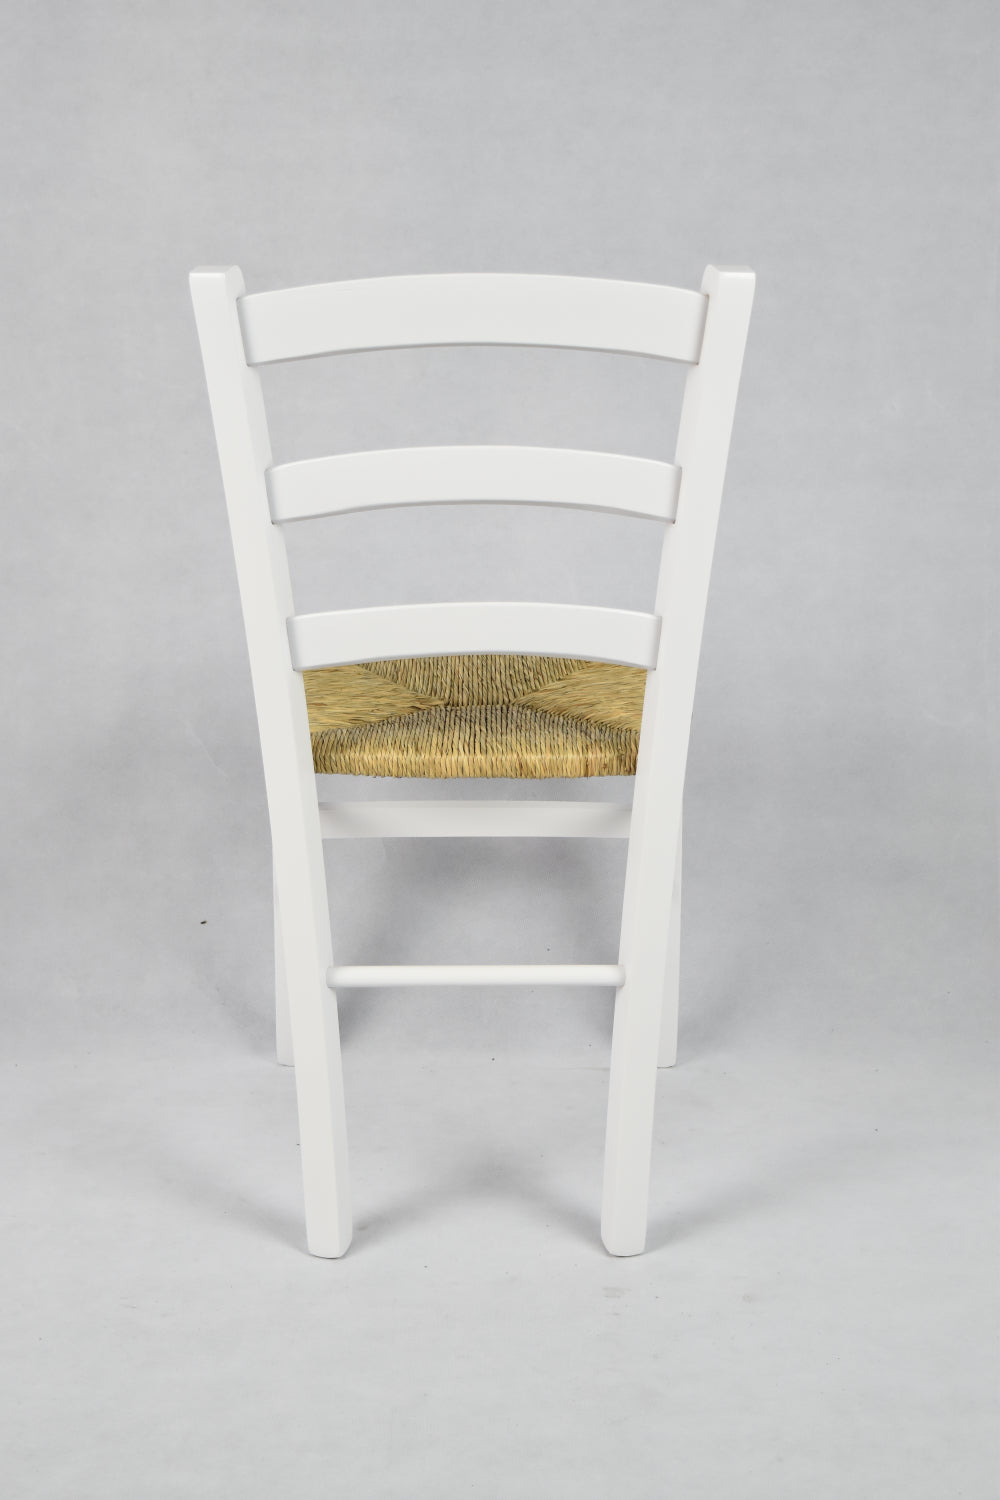 Tommychairs - Set 4 sillas de Cocina y Comedor  Venezia, Estructura en Madera de Haya barnizada Color Blanco y Asiento en Paja